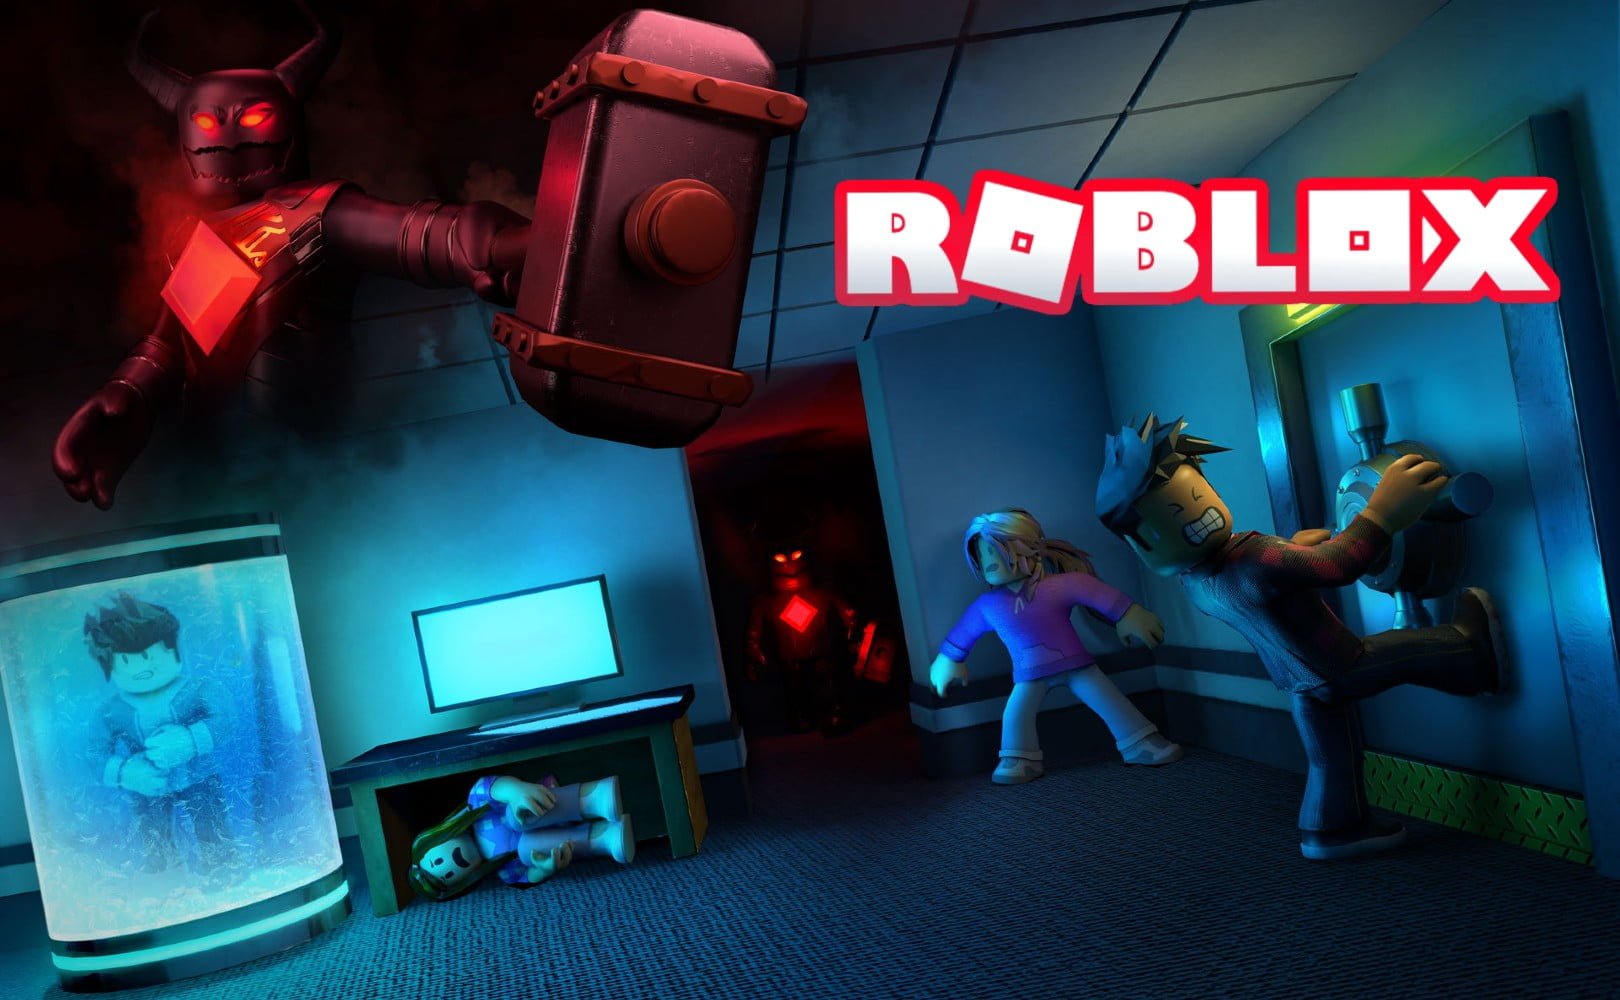 Grafika przedstawiająca kadr z gry Roblox. Na grafice znajduje się duży napis "Roblox".